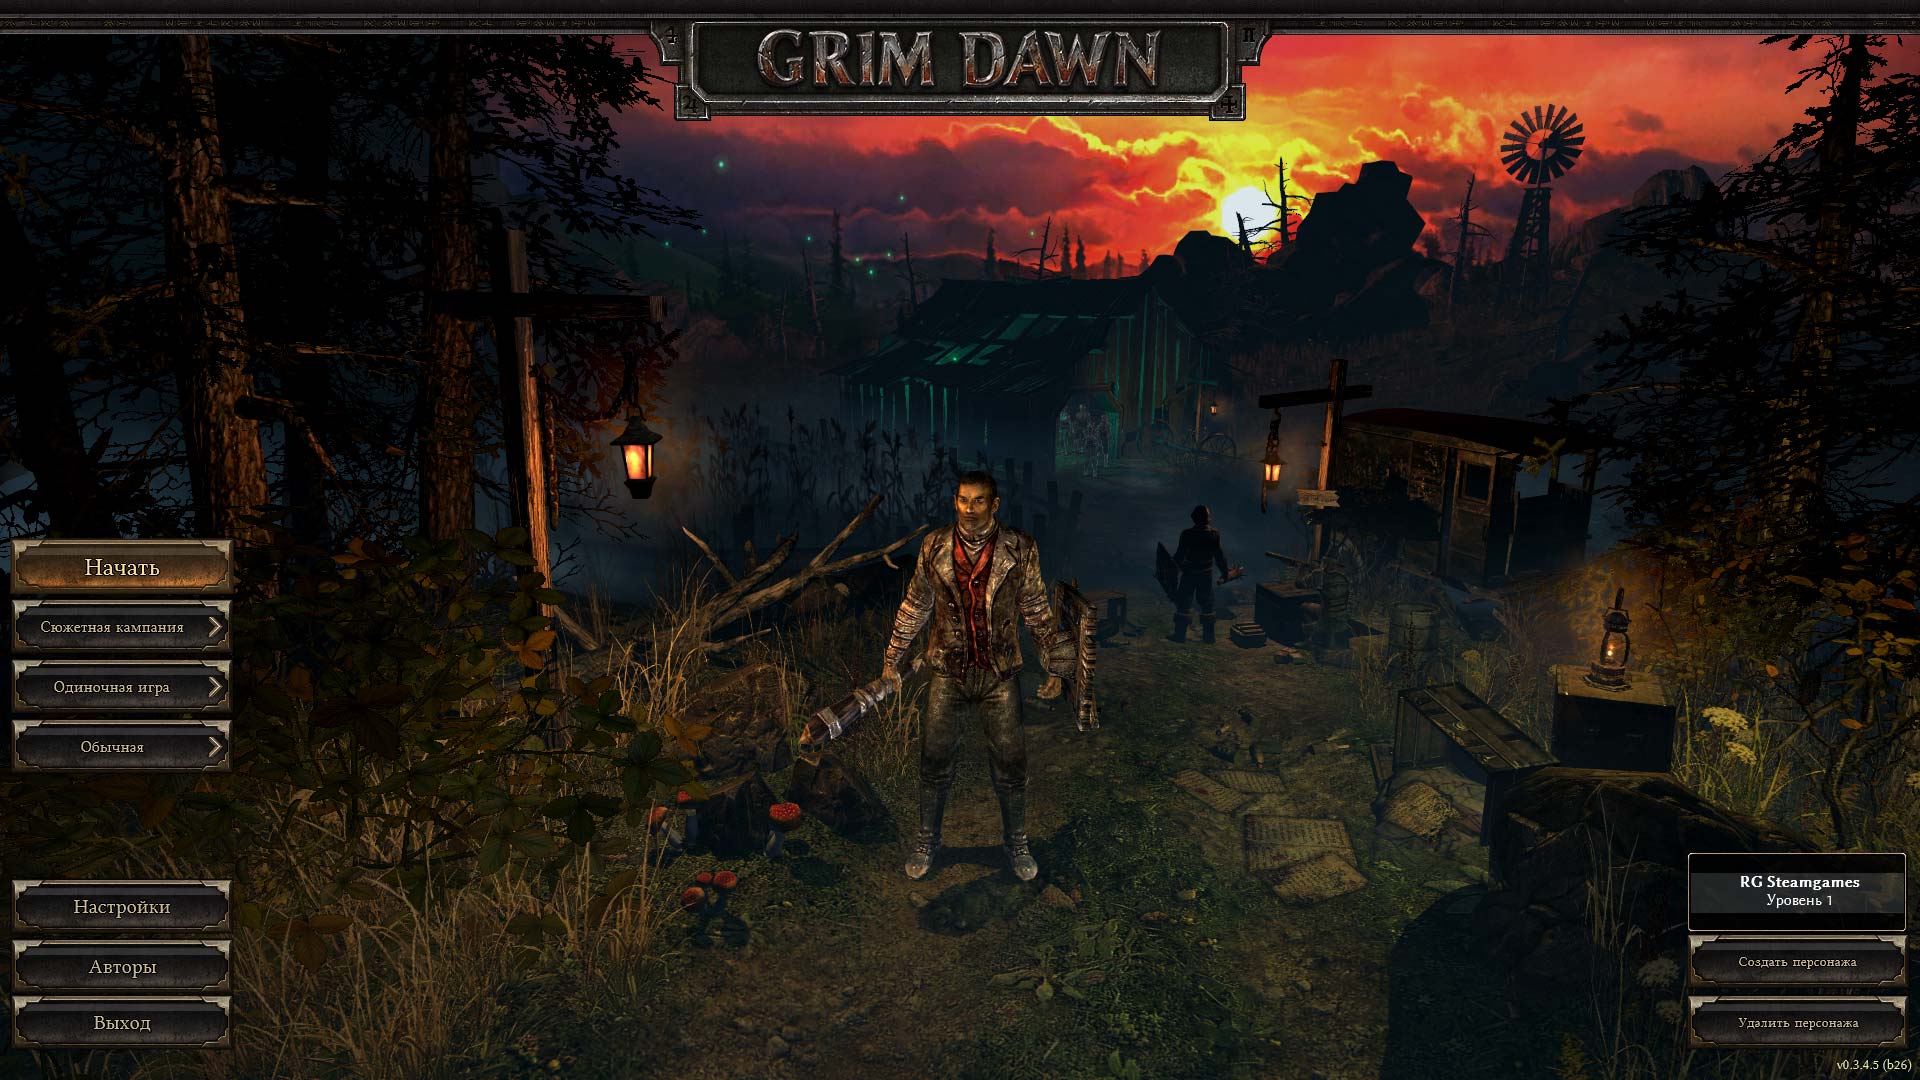 Down 1 8 and 7. Grim игра. Grim Dawn 1.1.9.8. Grim Dawn / мрачный рассвет. РПГ Grim Dawn.